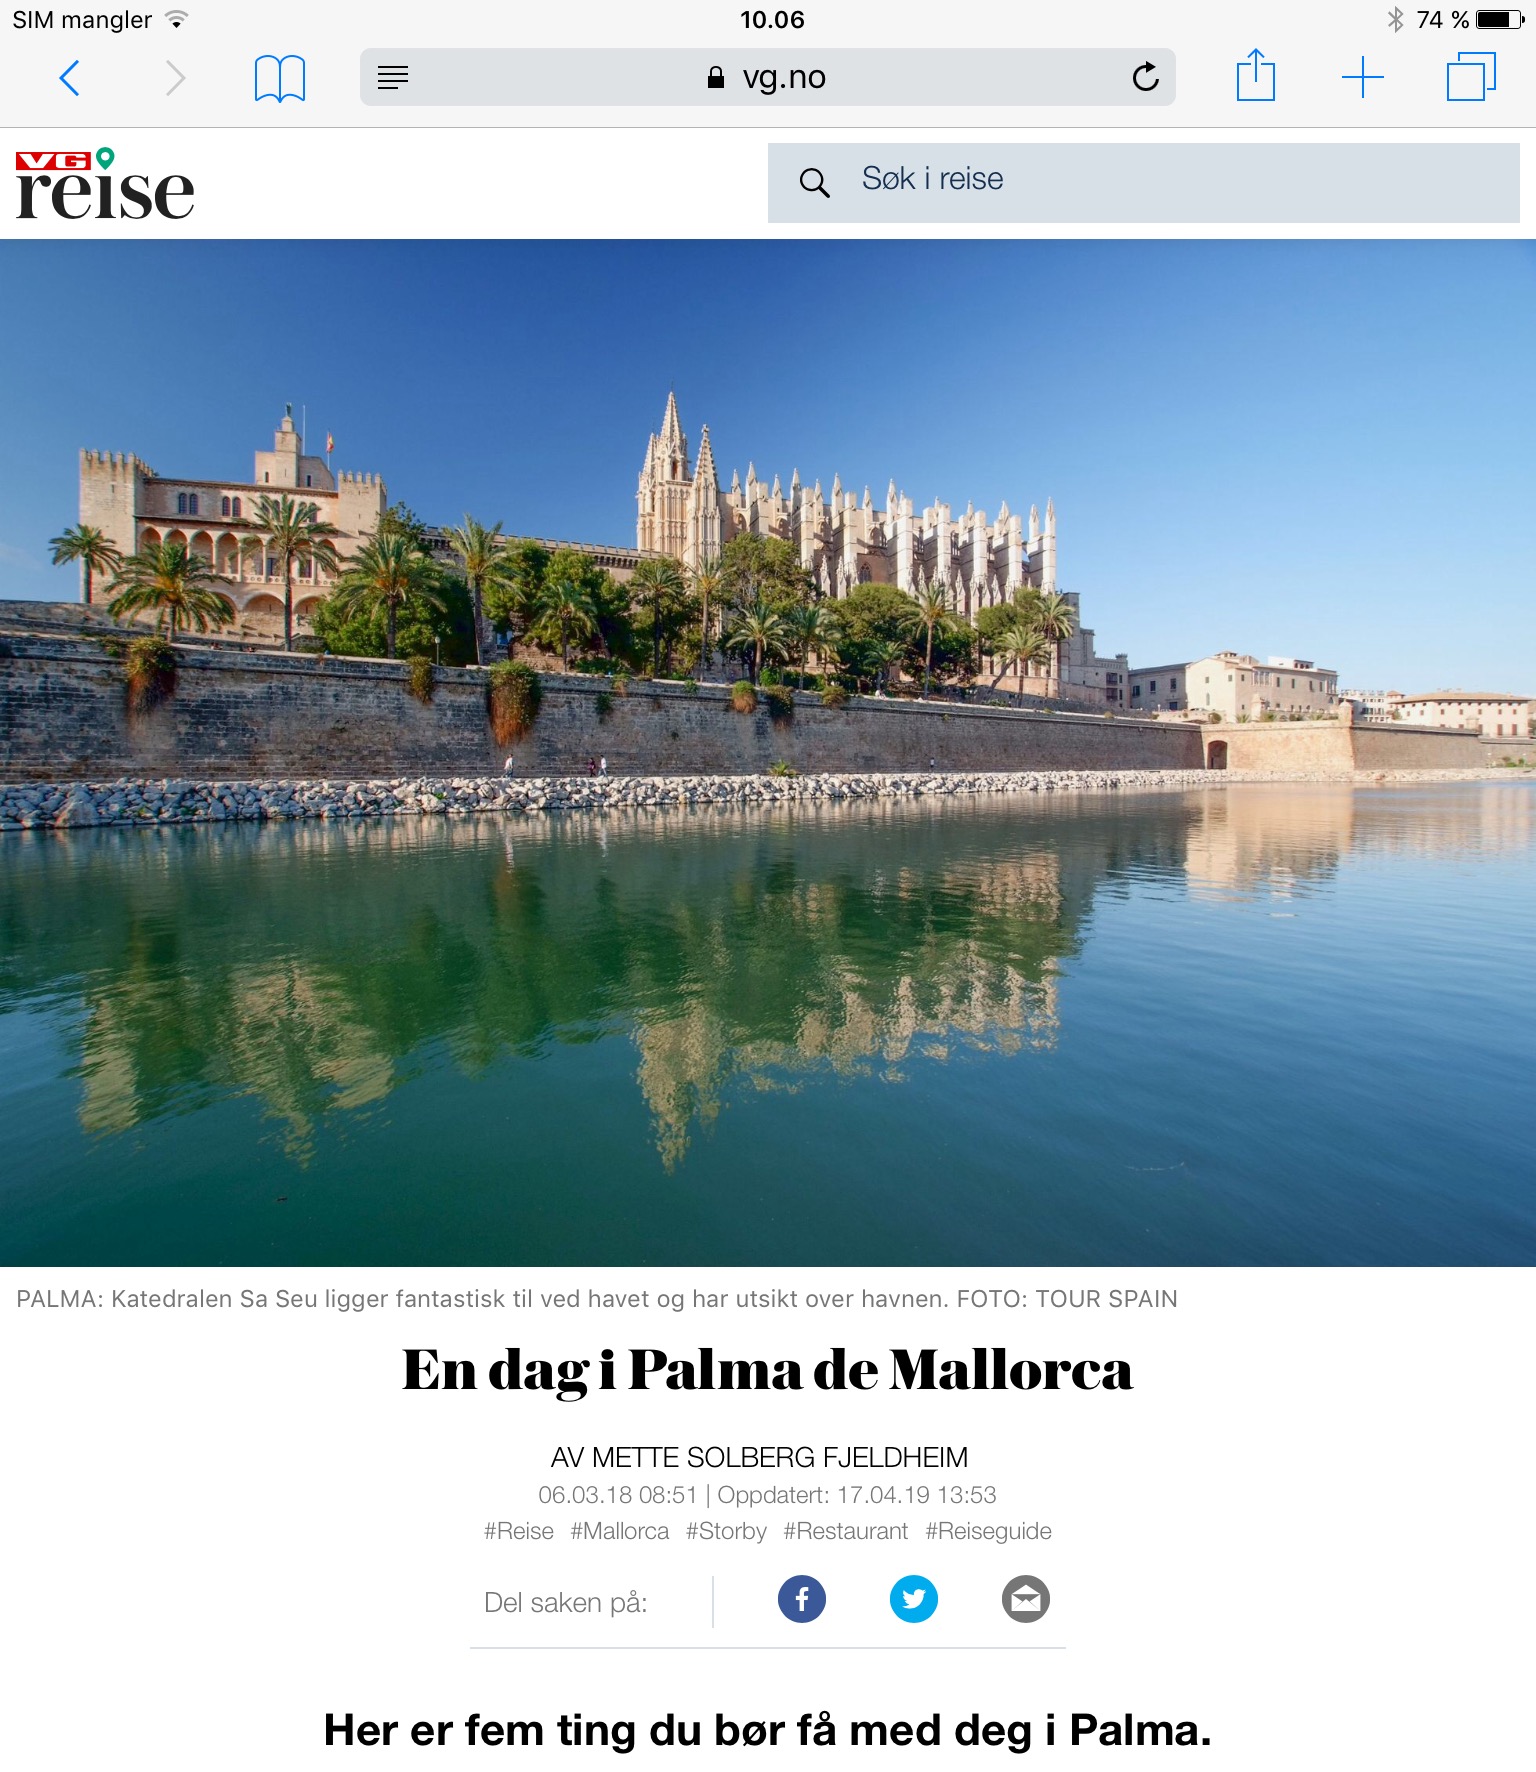 Reiseartikkel om Palma på Mallorca i VG_Levert av Mette S. Fjeldheim - Reiselykke